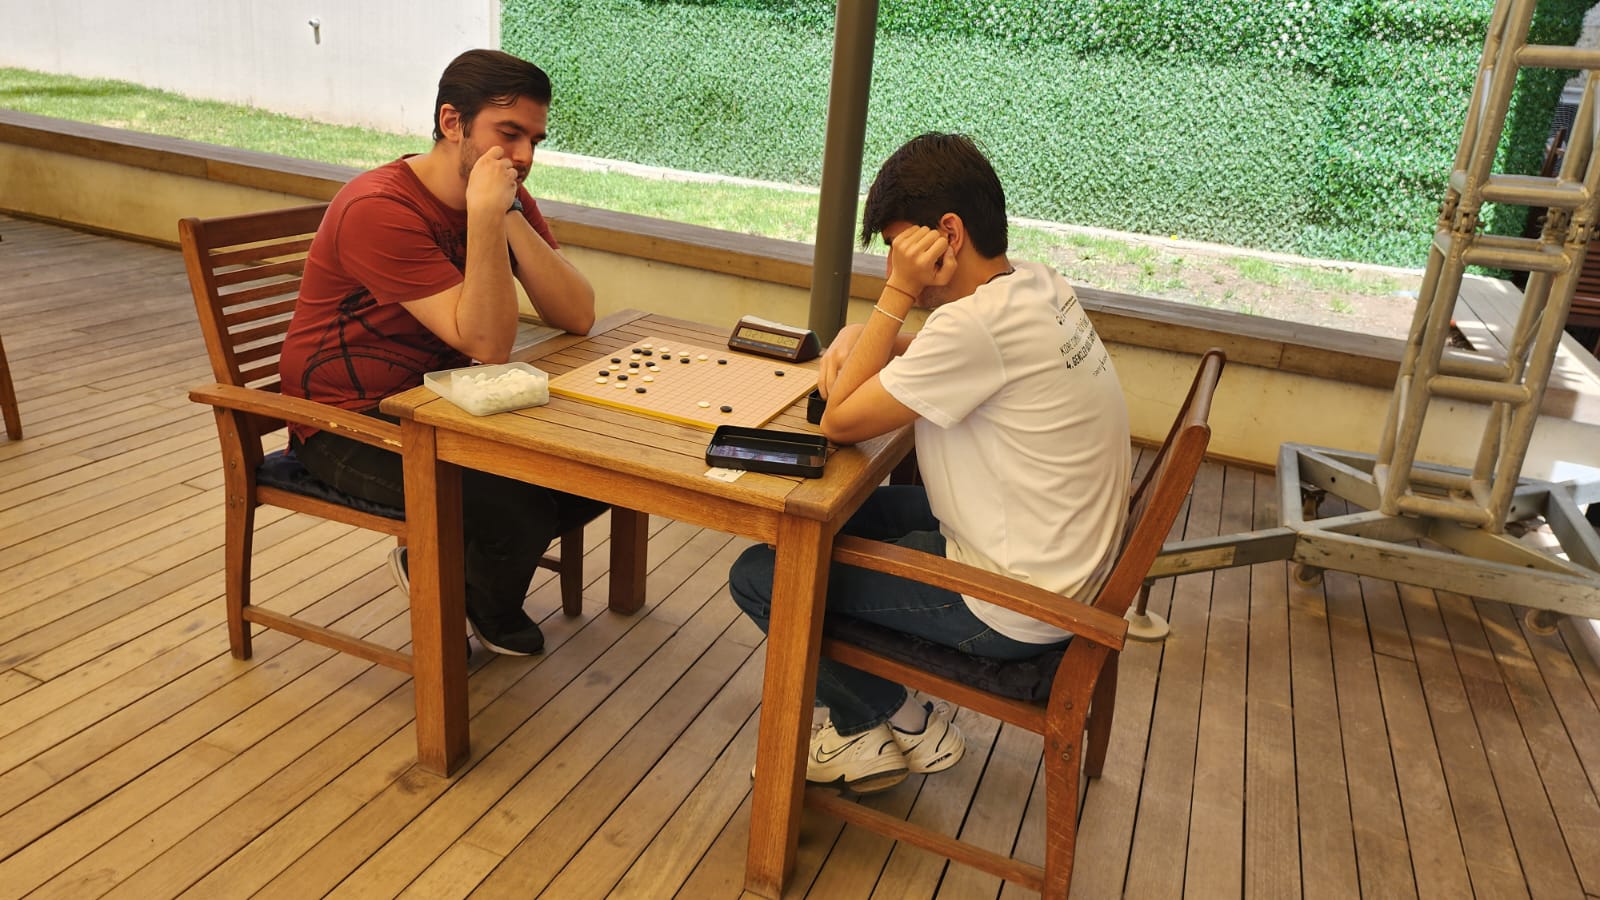 Sosyal Bilimler Lisesi Go (Baduk) Turnuva Finalinde Türkiye 3 ve 4.sü oldu.